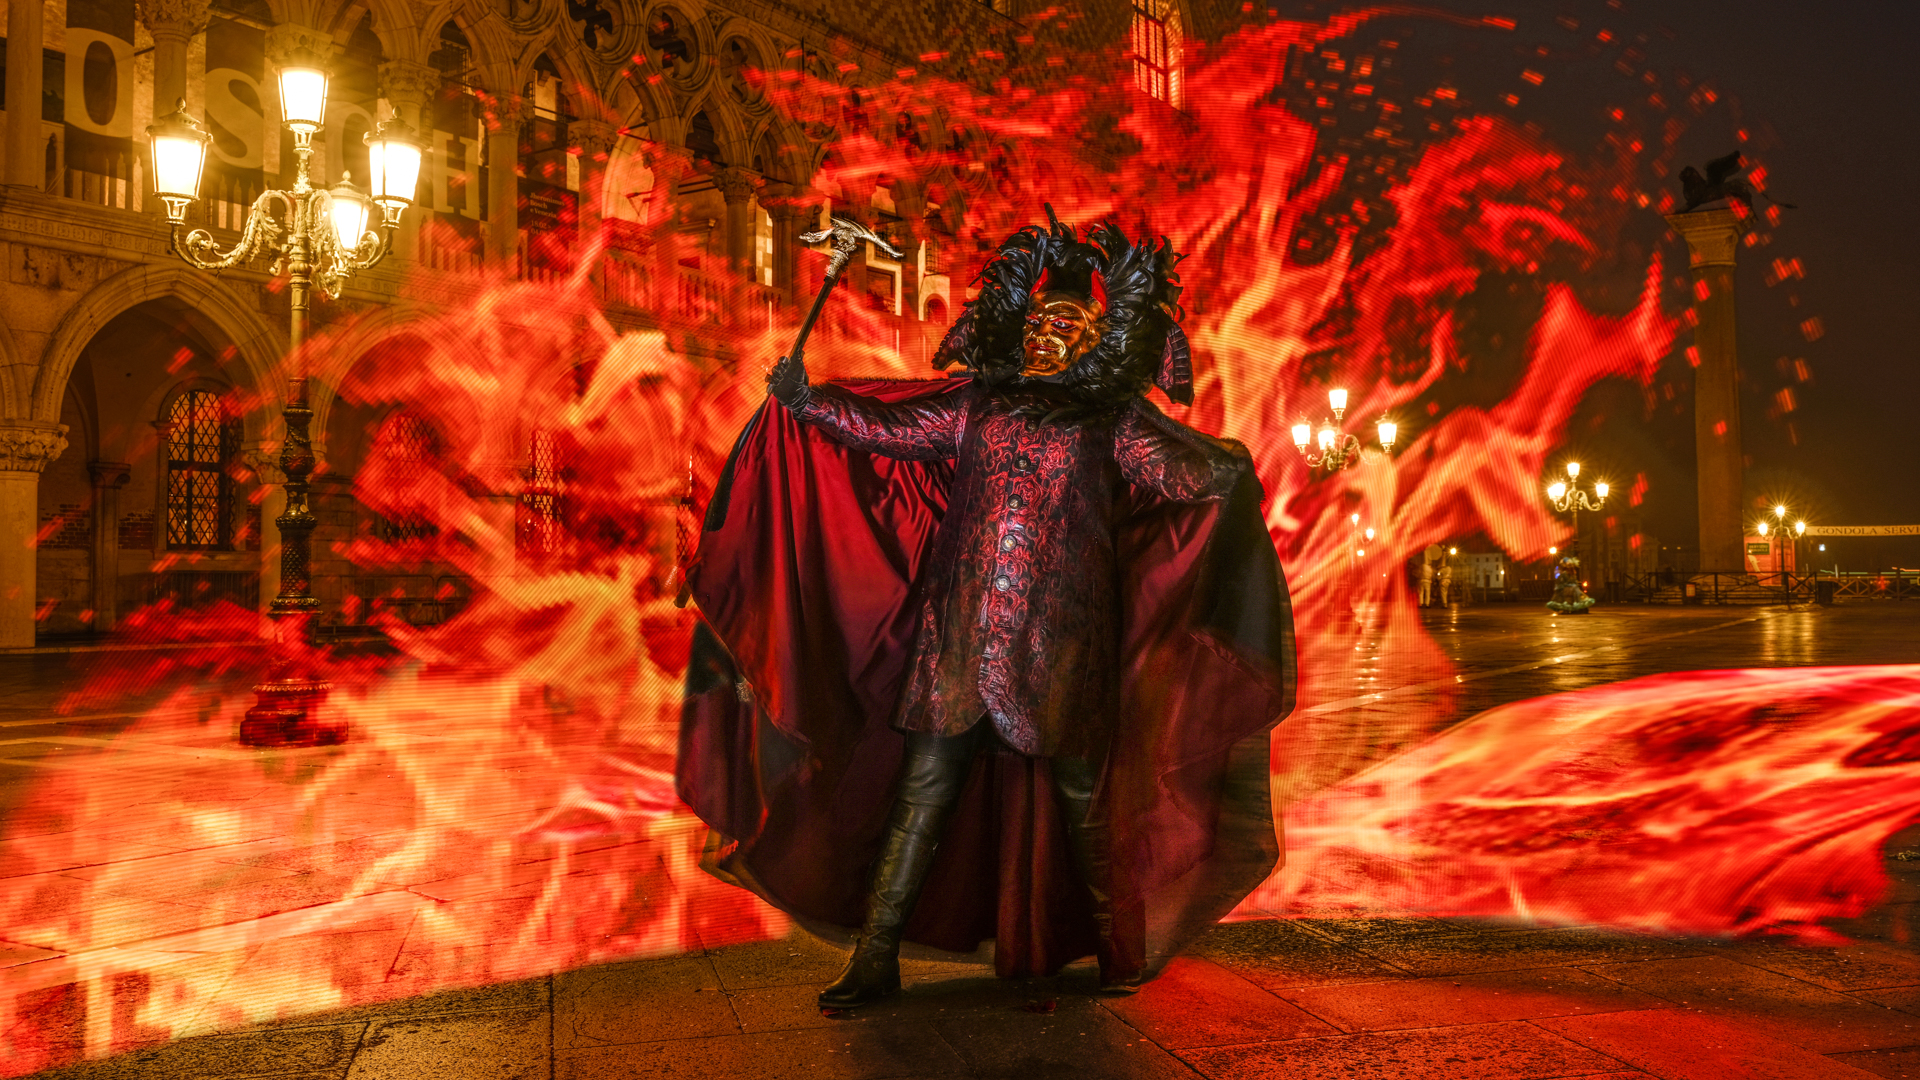 The Devil in Venice for Carnival